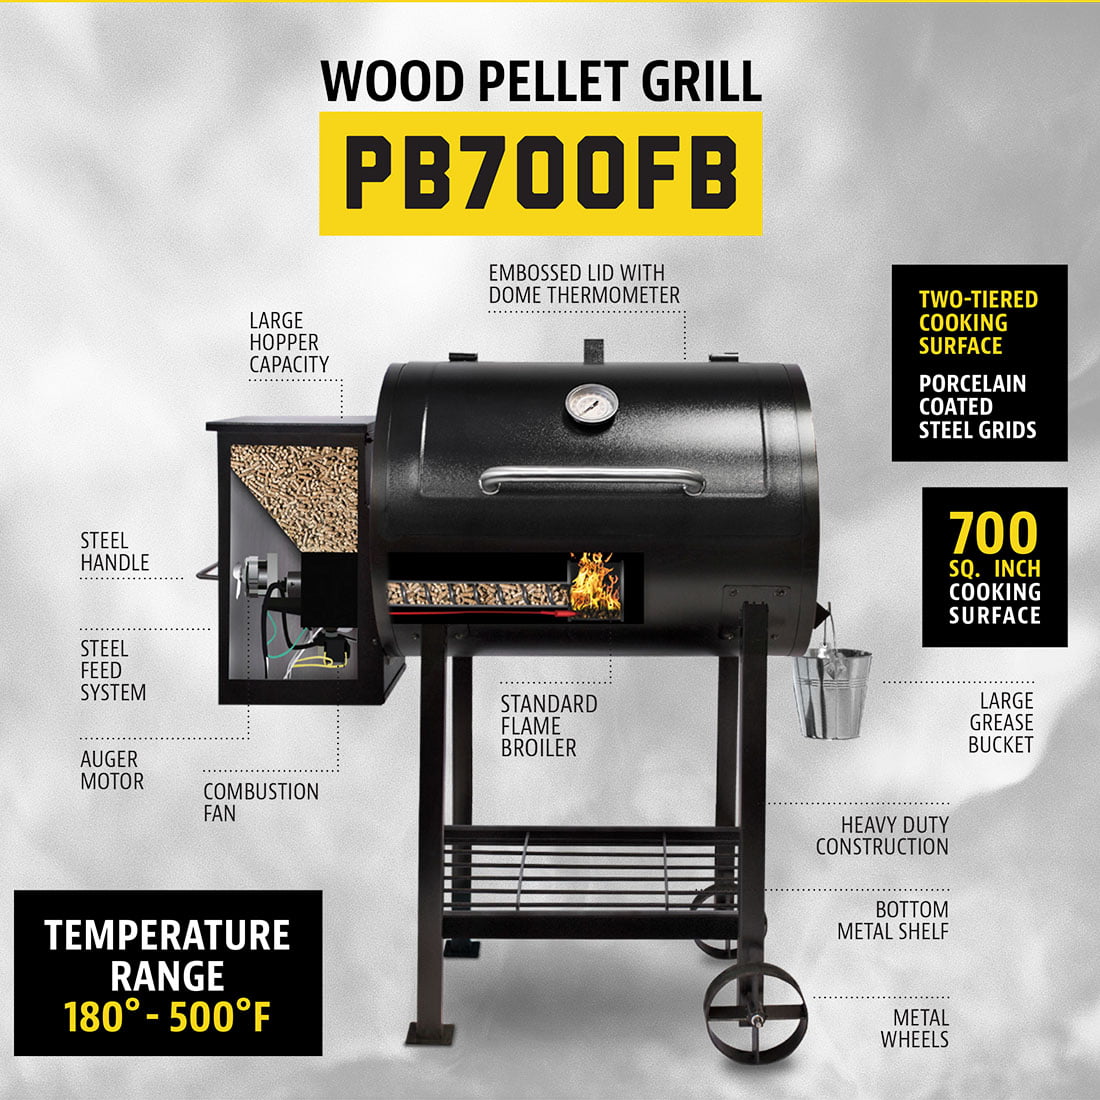 700fb wood pellet grill